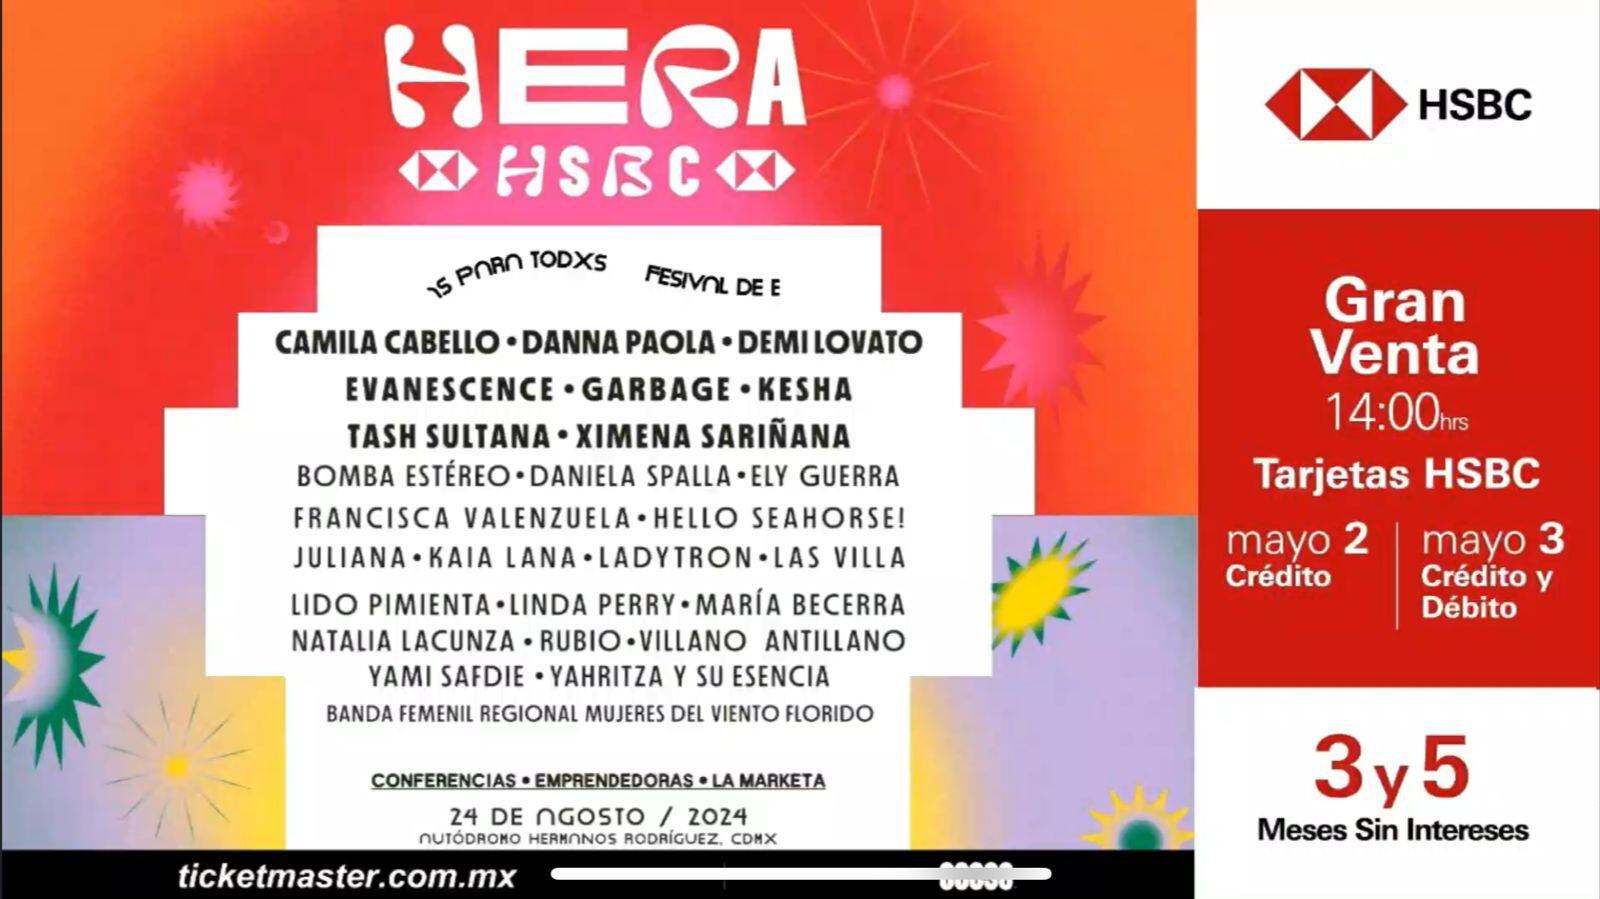 Festival Hera HSBC 2024: Evanescence, Camila Cabello, Danna Paola y más llegan en esta fecha que ya tiene día de preventa